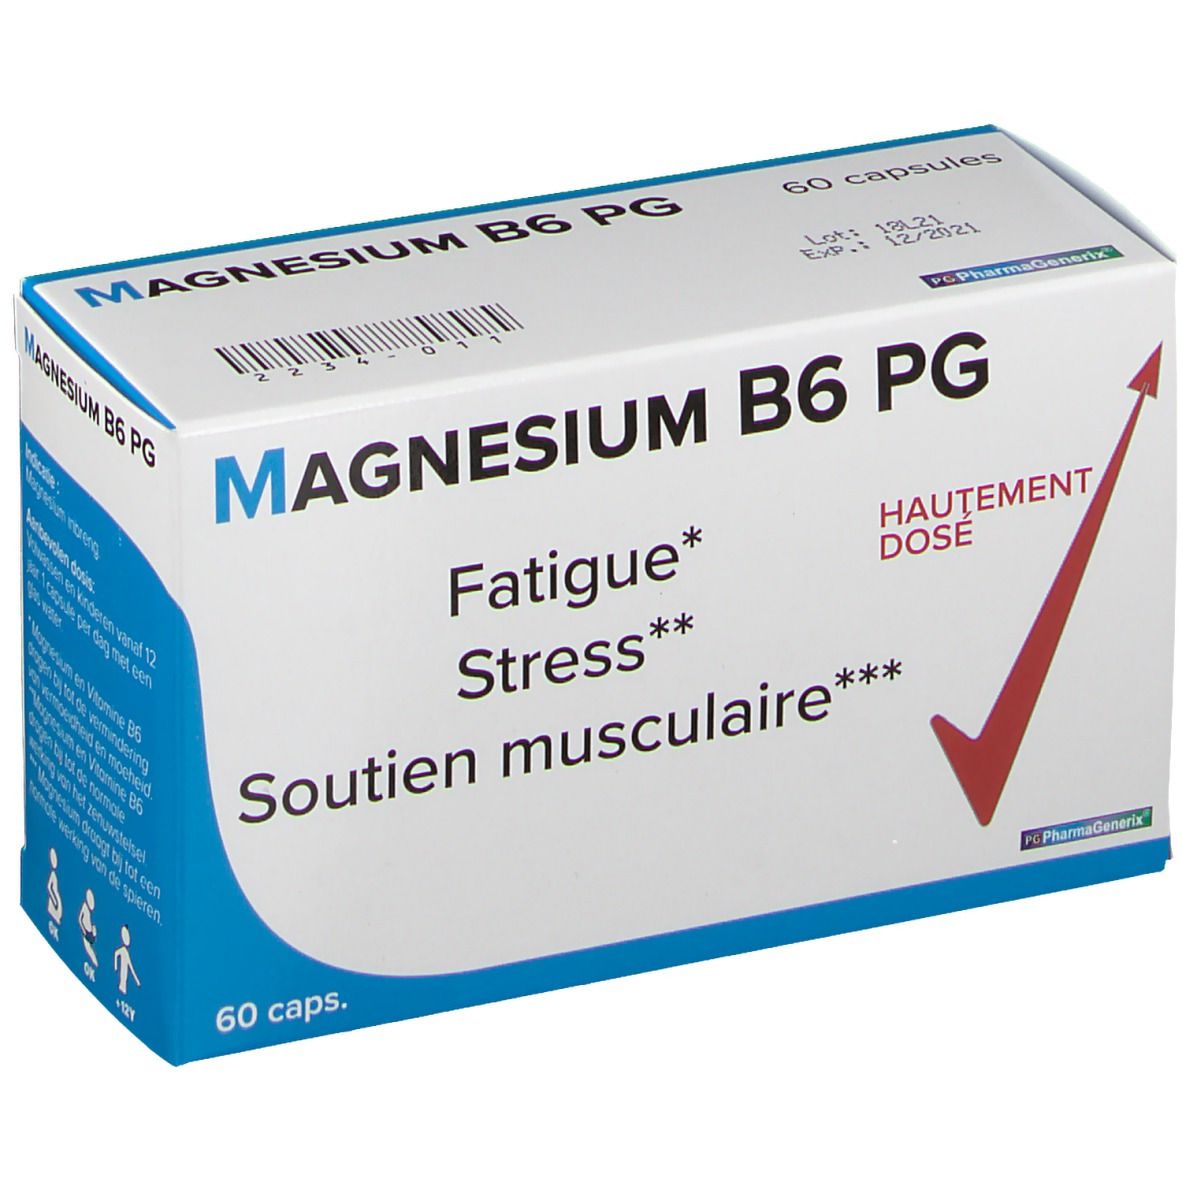 Pharmagenerix Magnésium B6 PG